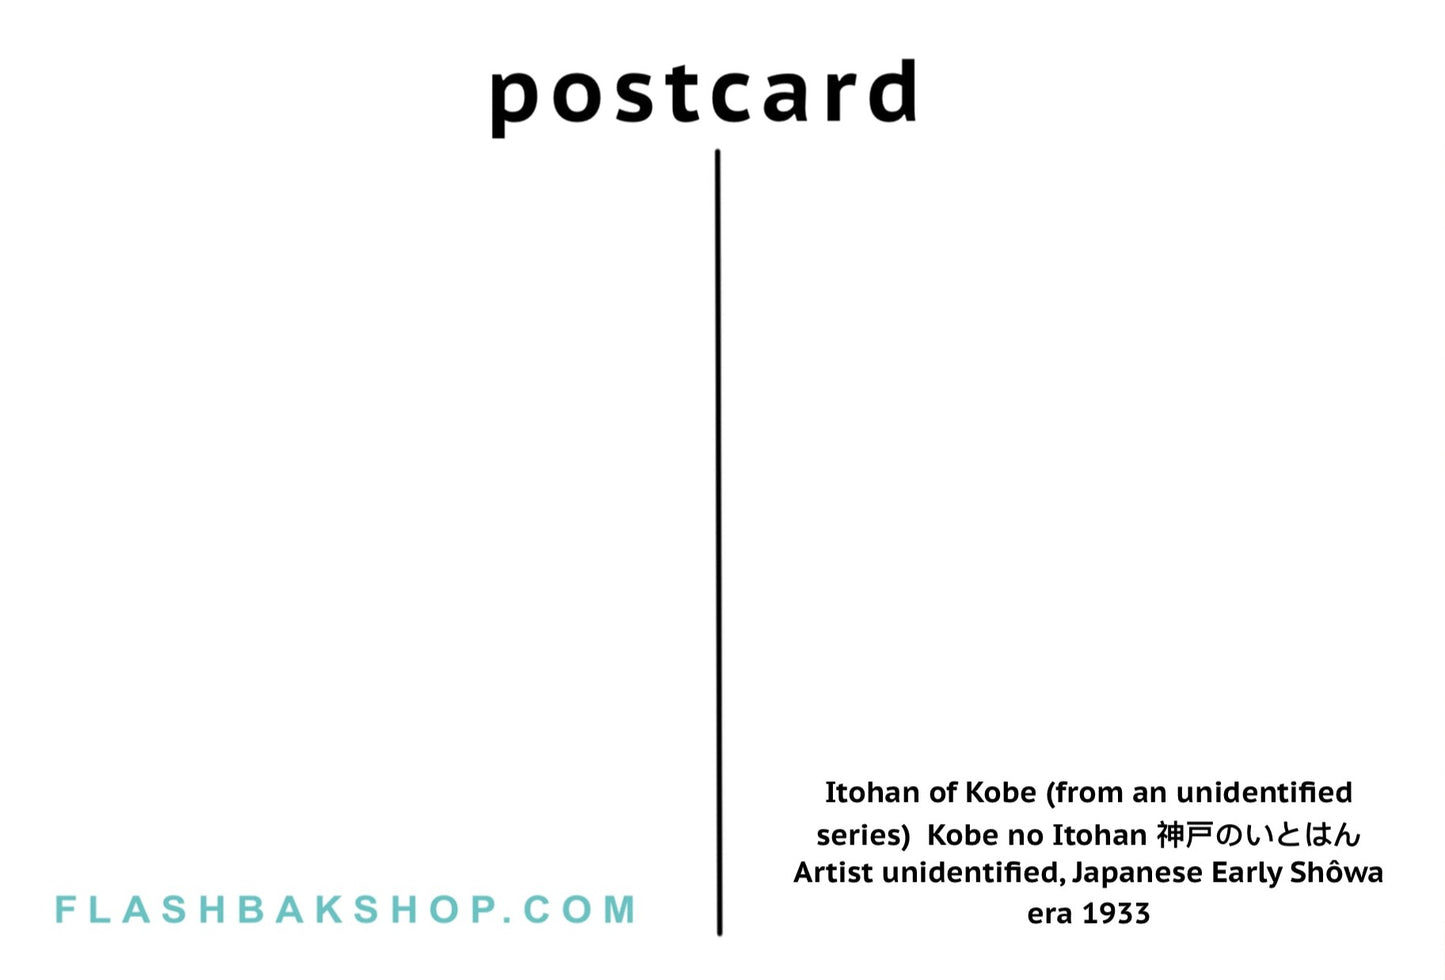 Itohan de Kobe, 1933 - Postal